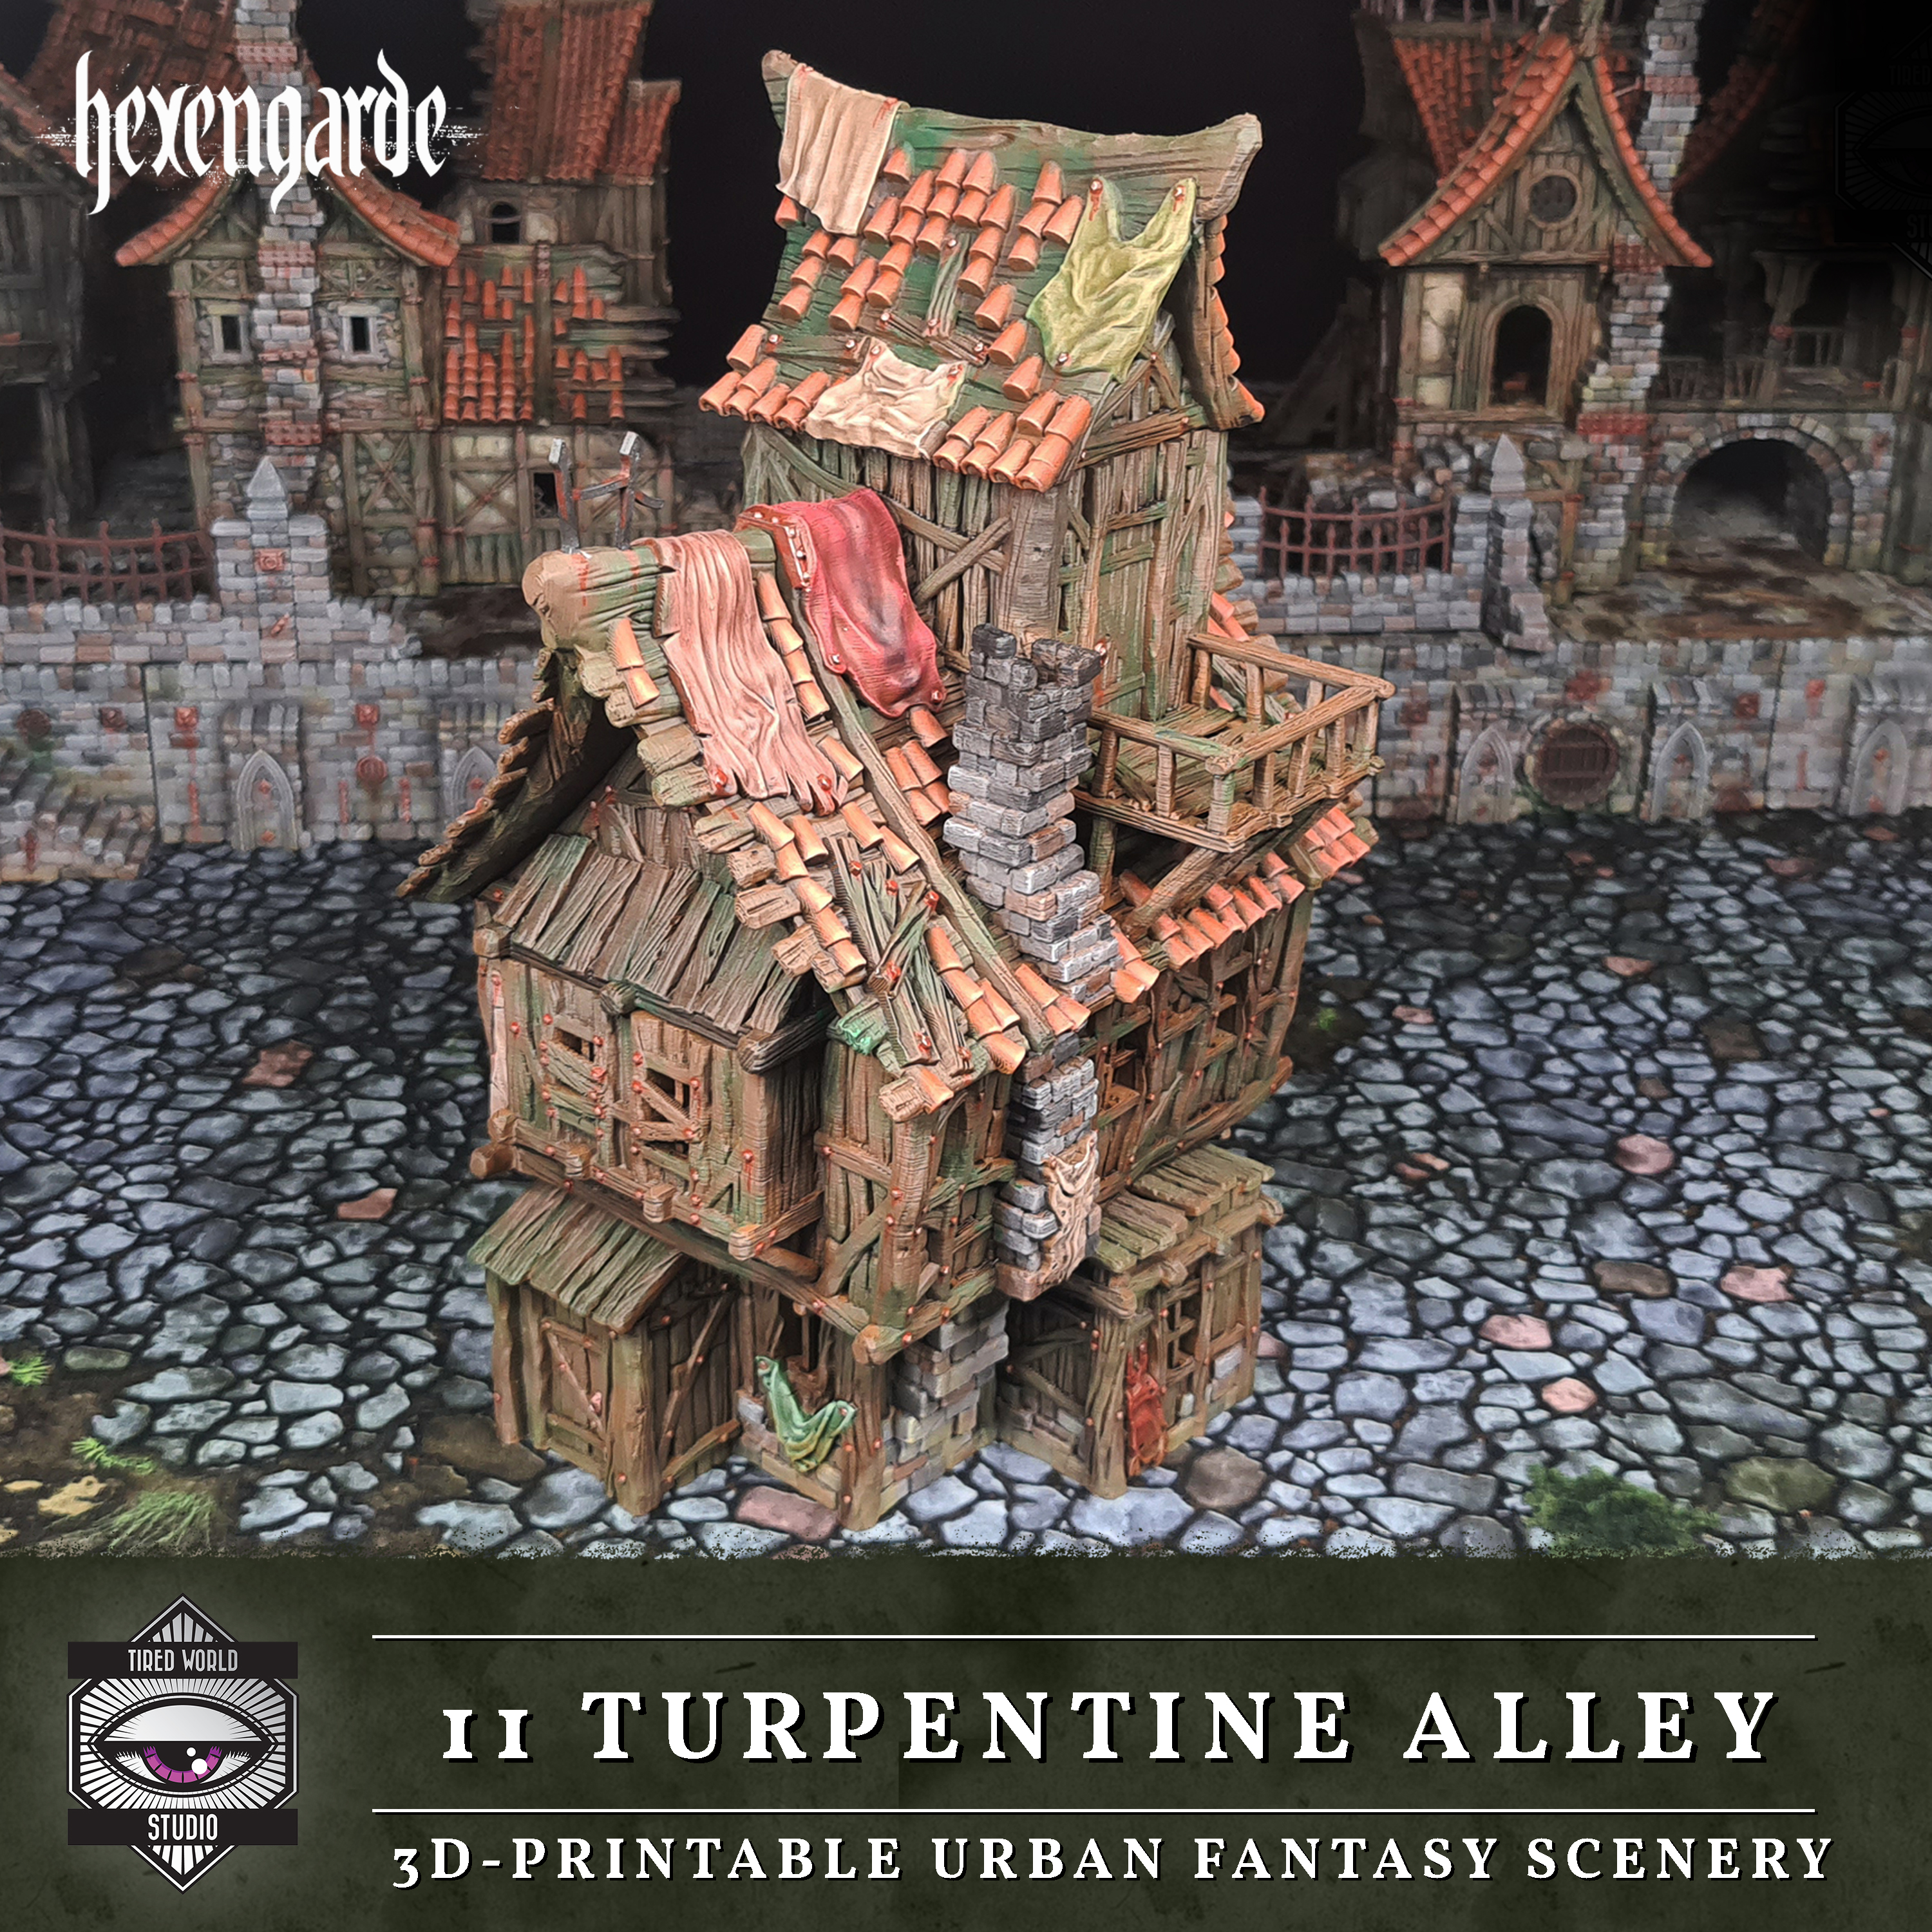 11 Turpentine Alley